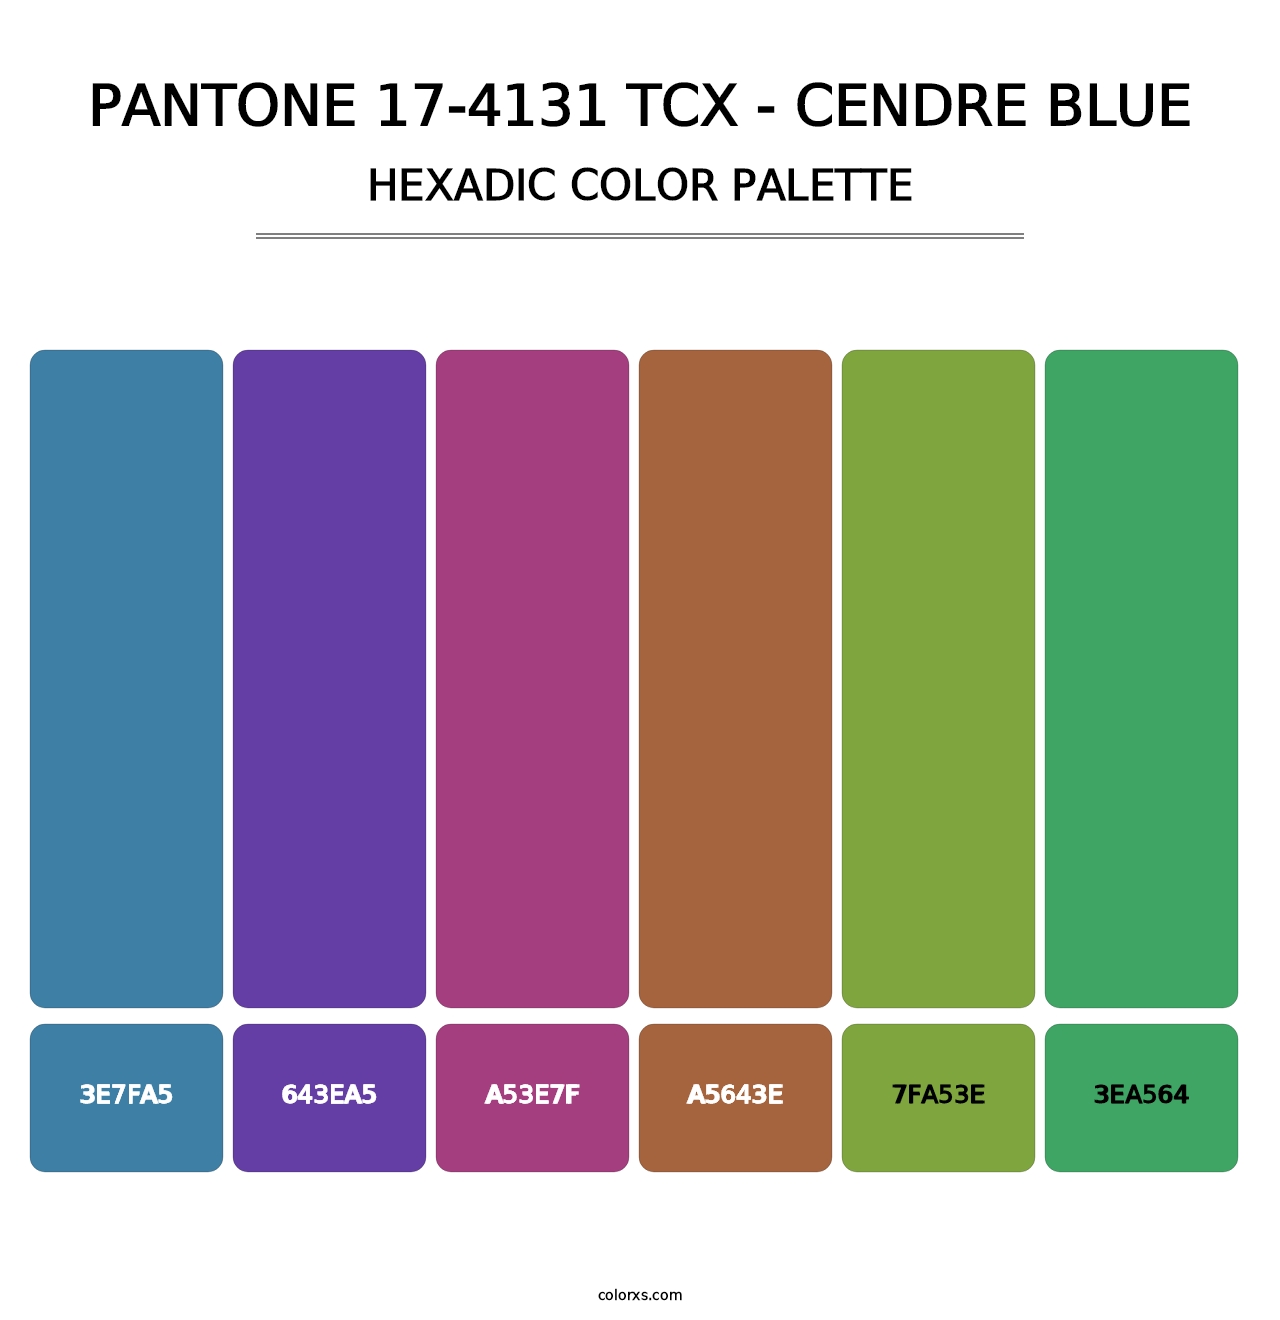 PANTONE 17-4131 TCX - Cendre Blue - Hexadic Color Palette